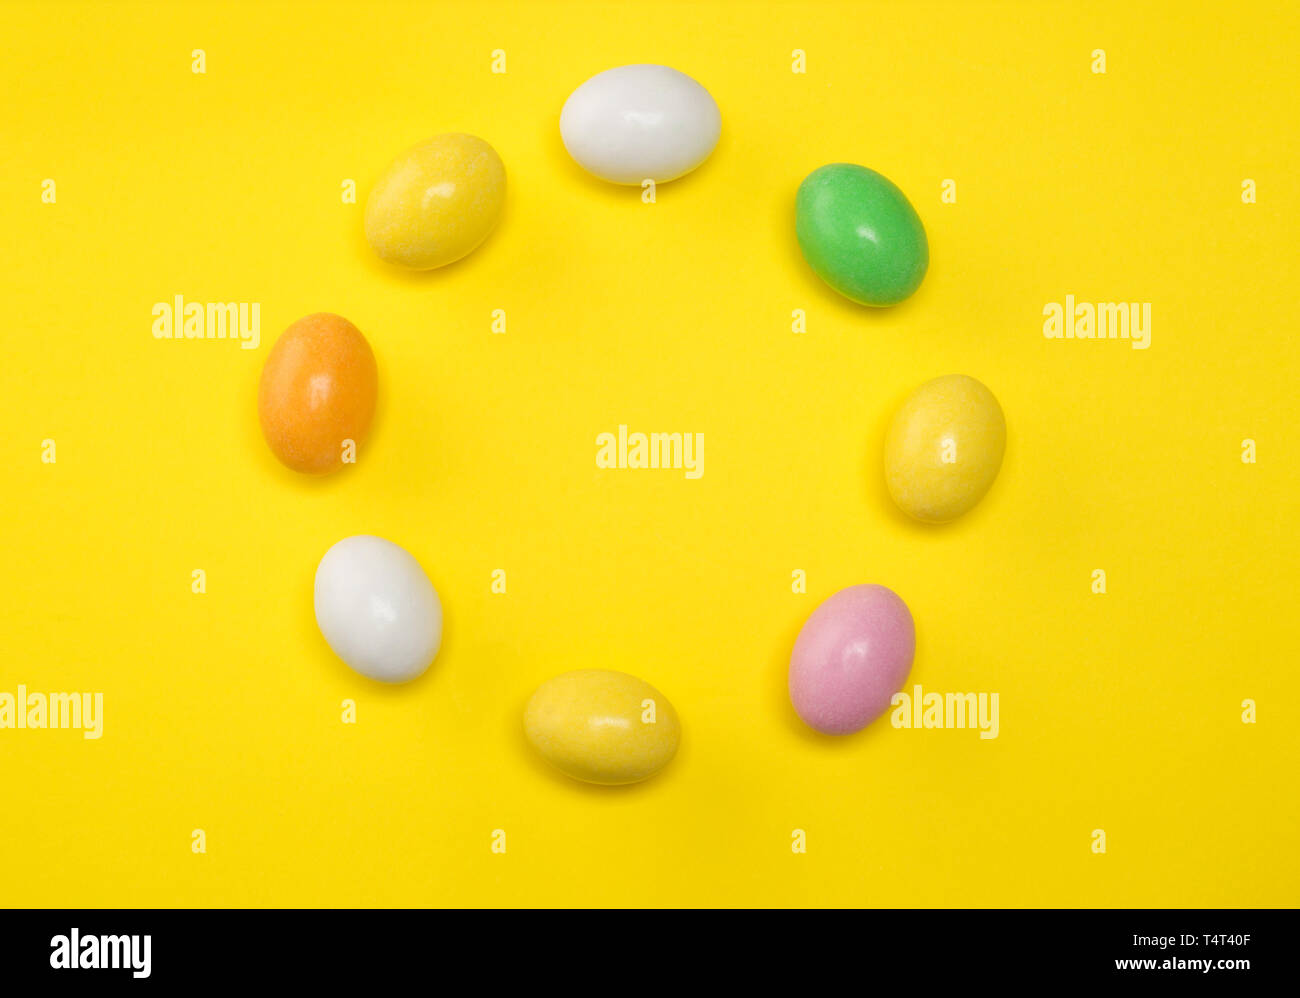 Immagine del cerchio di candy uova di pasqua in colori pastello.Concetto di pasqua.Flat lay in montagna con orientamento orizzontale e copia di spazio. Foto Stock